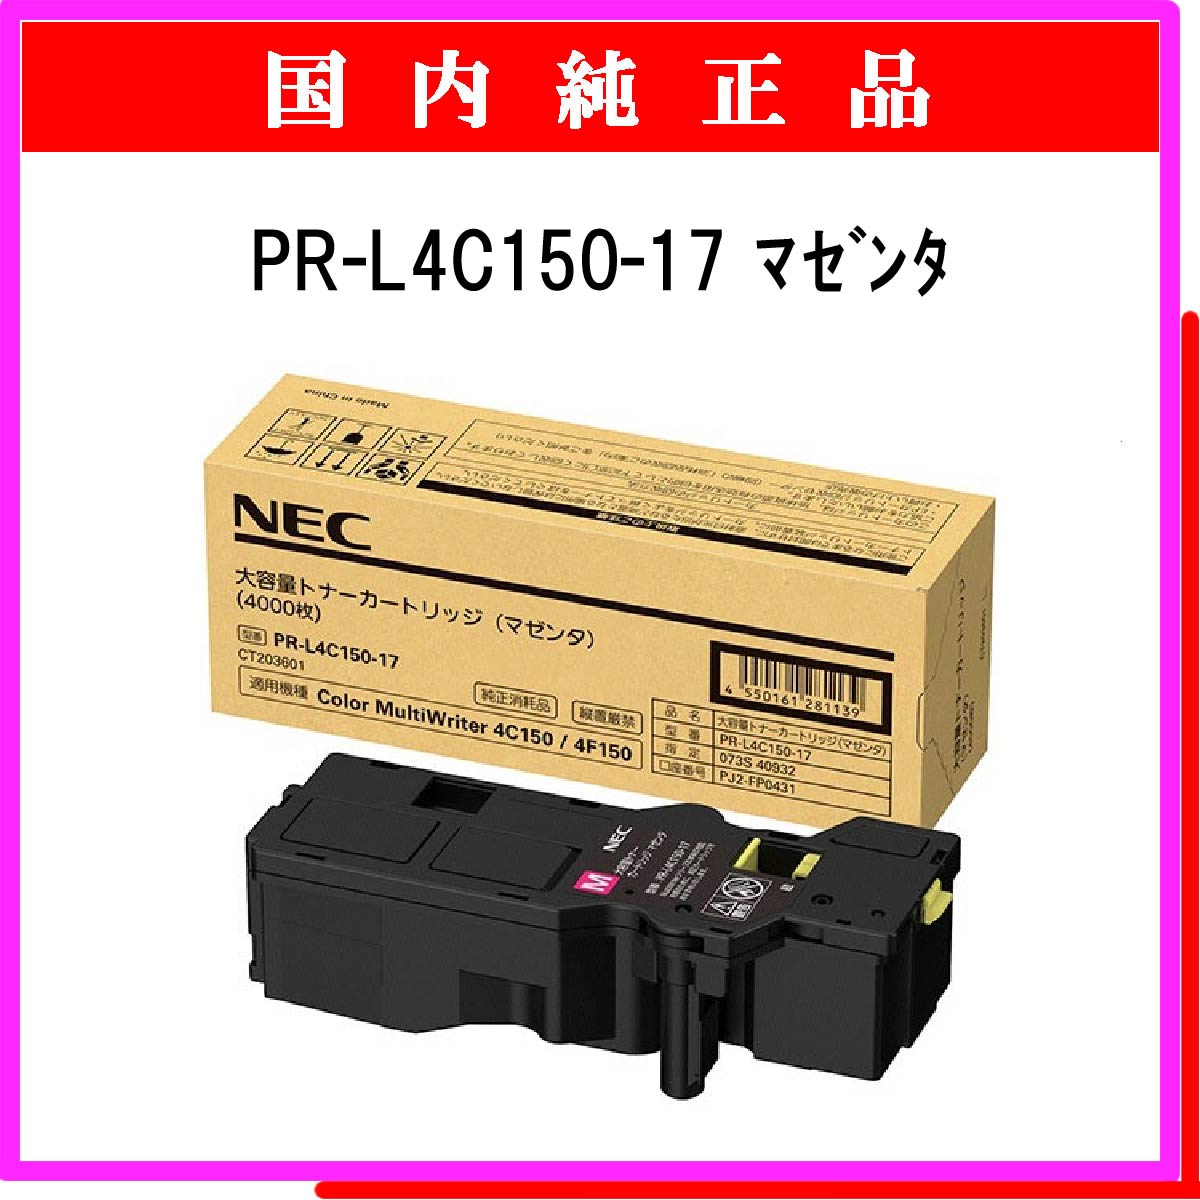 PR-L4C150-17 (大容量) 純正